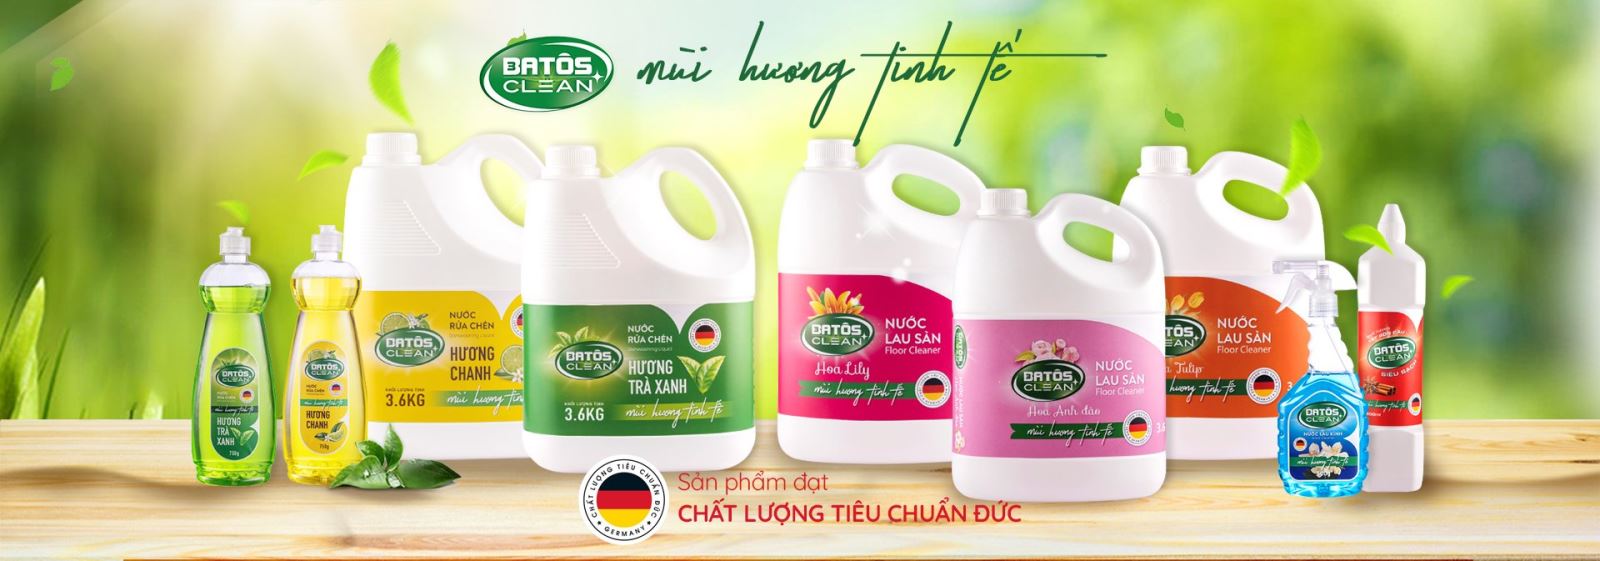 Batos Clean - Bí quyết sạch sẽ và an toàn cho gia đình Việt